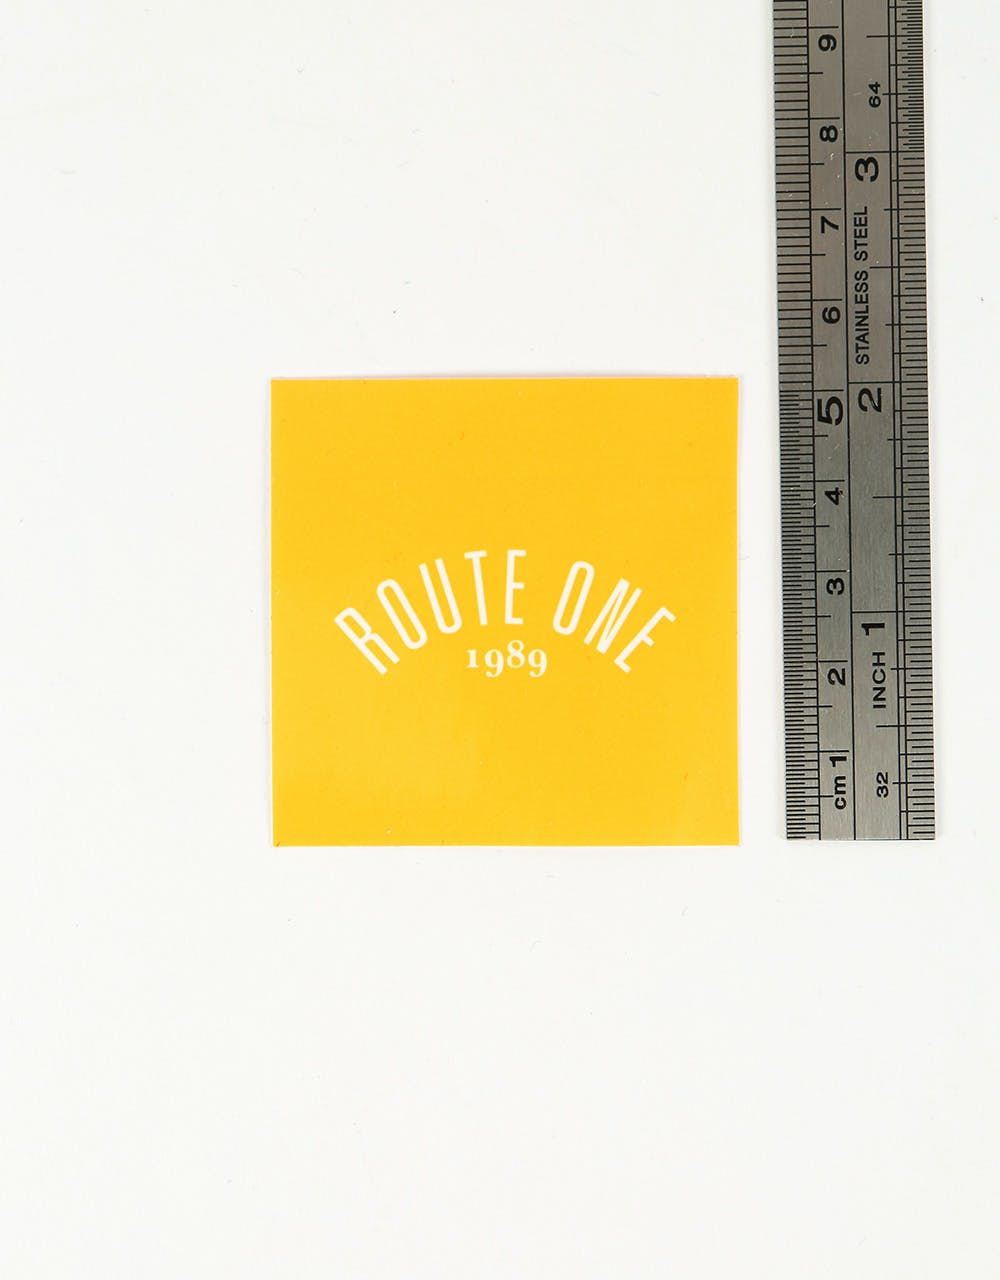 Route One Square Arch Logo Small Sticker - Orange/White